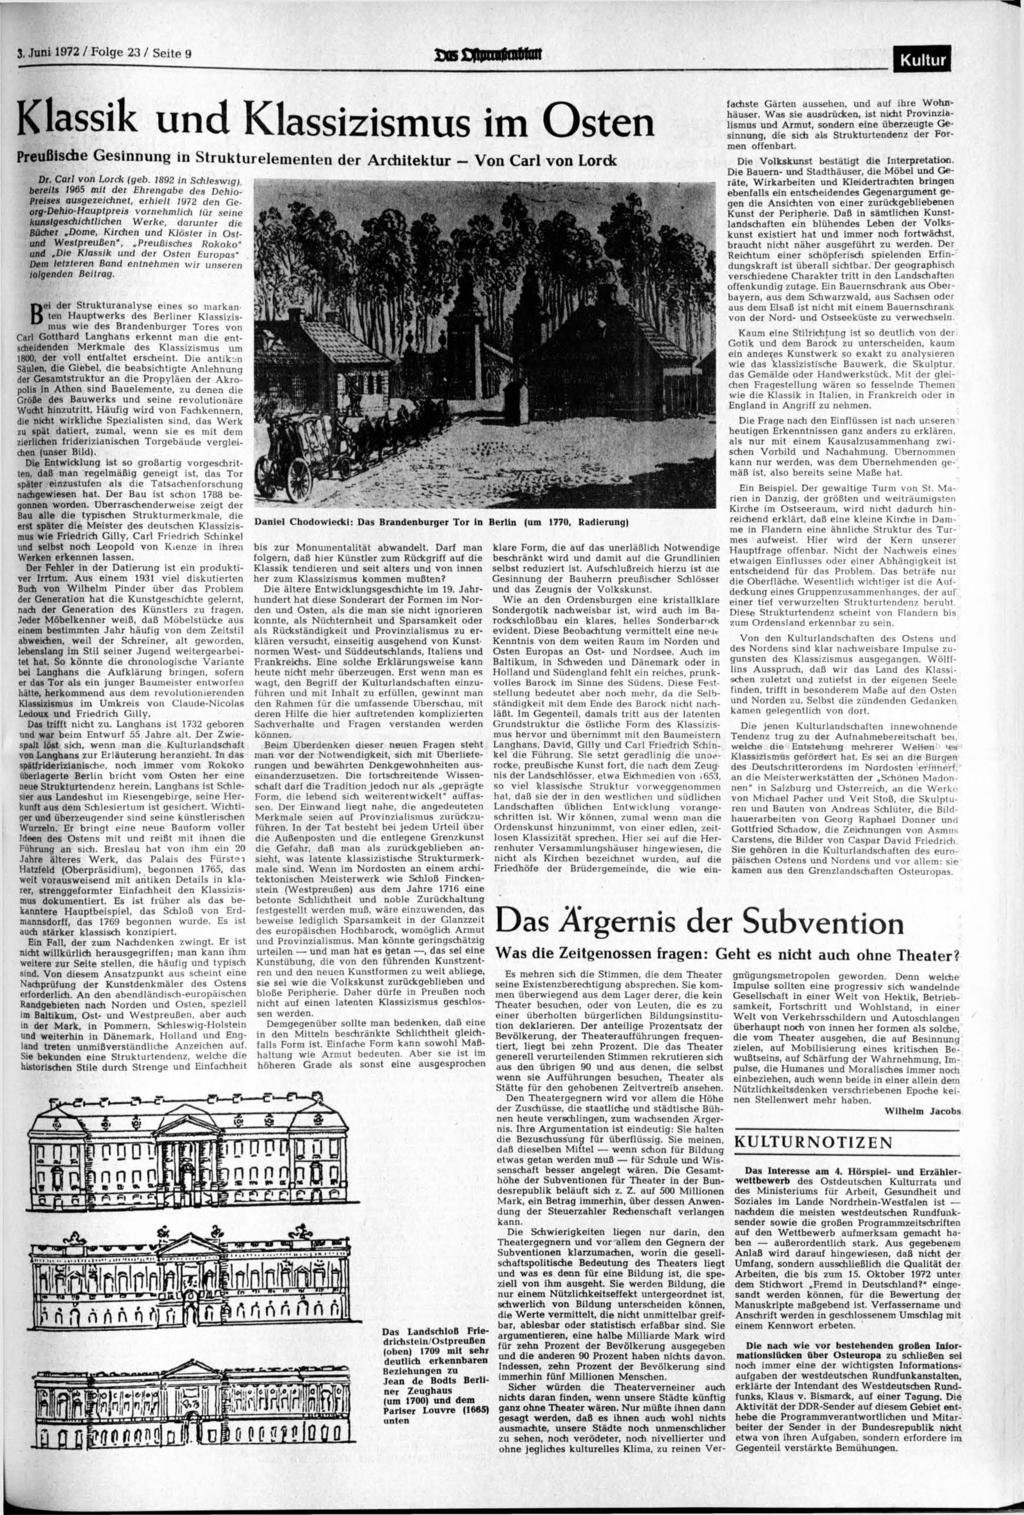 3. Juni 1972 / Folge 23 / Seite 9 JÄDfnrtnrfiratrrait Kultur Klassik und Klassizismus im Osten Preußische Gesinnung in Strukturelementen der Architektur - Von Carl von Lorck Dr. Carl von Lorck (geb.